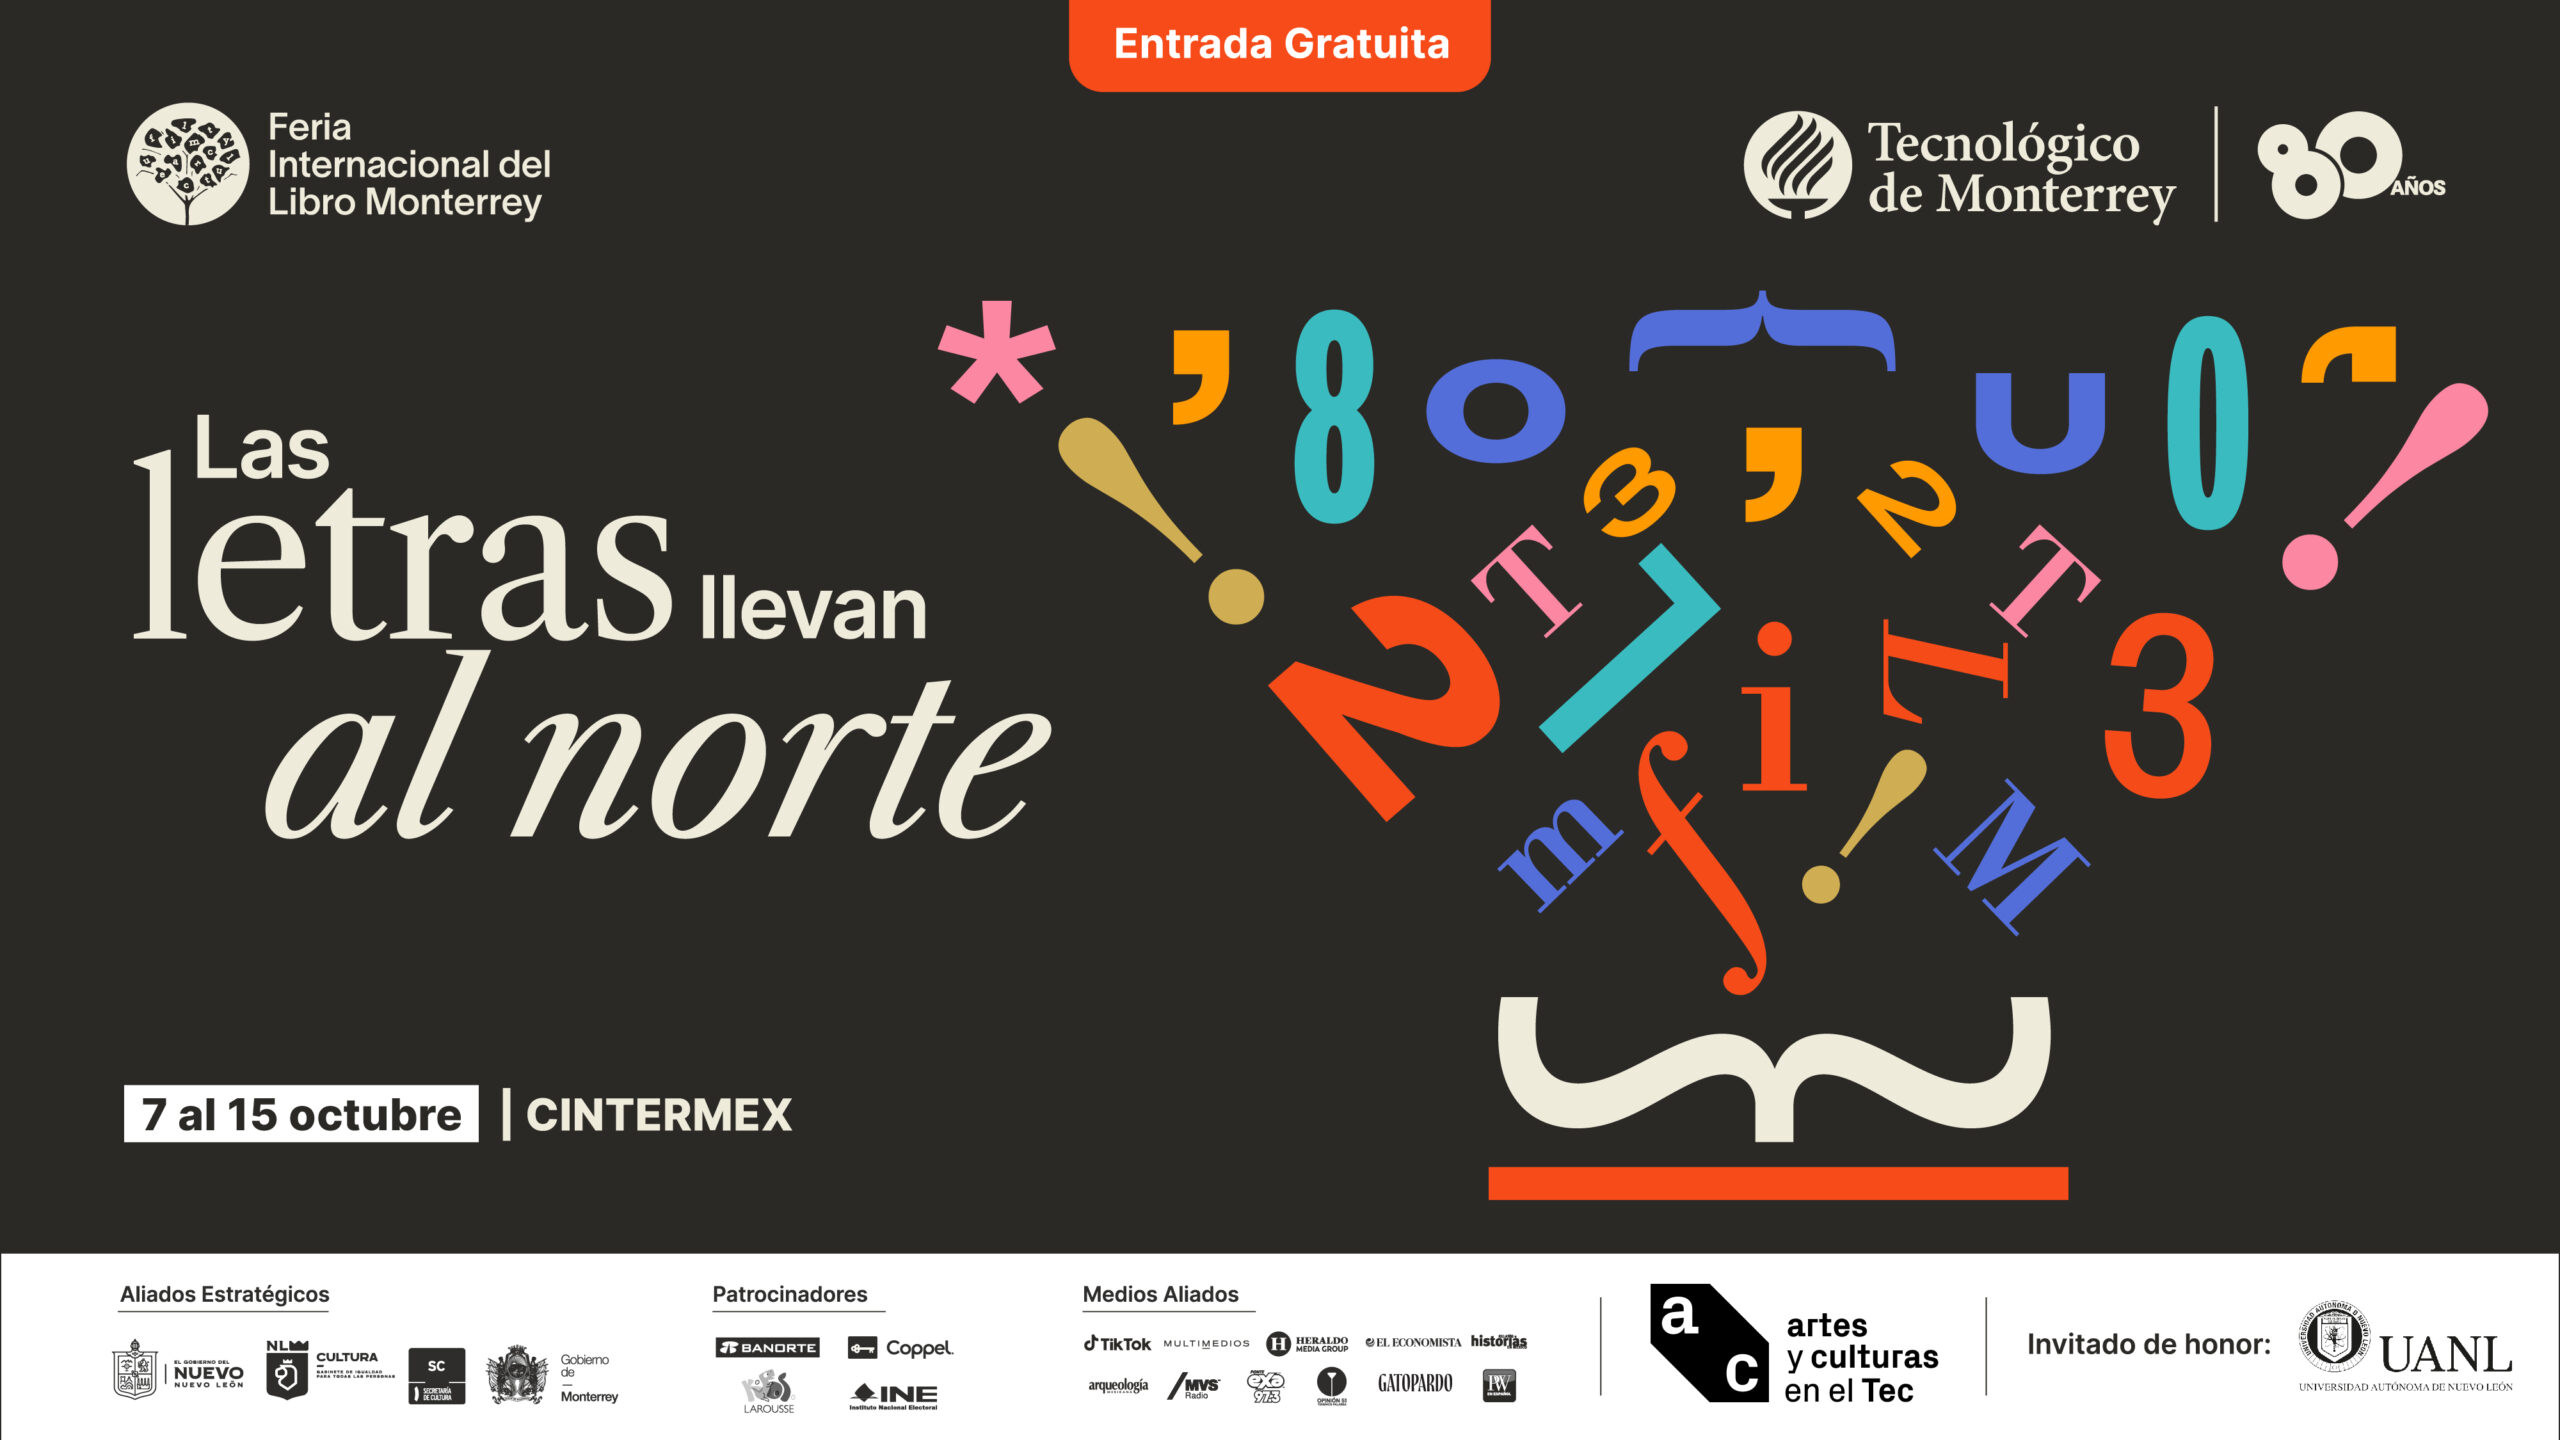 La Feria Internacional del Libro Monterrey «Las letras llevan al Norte»